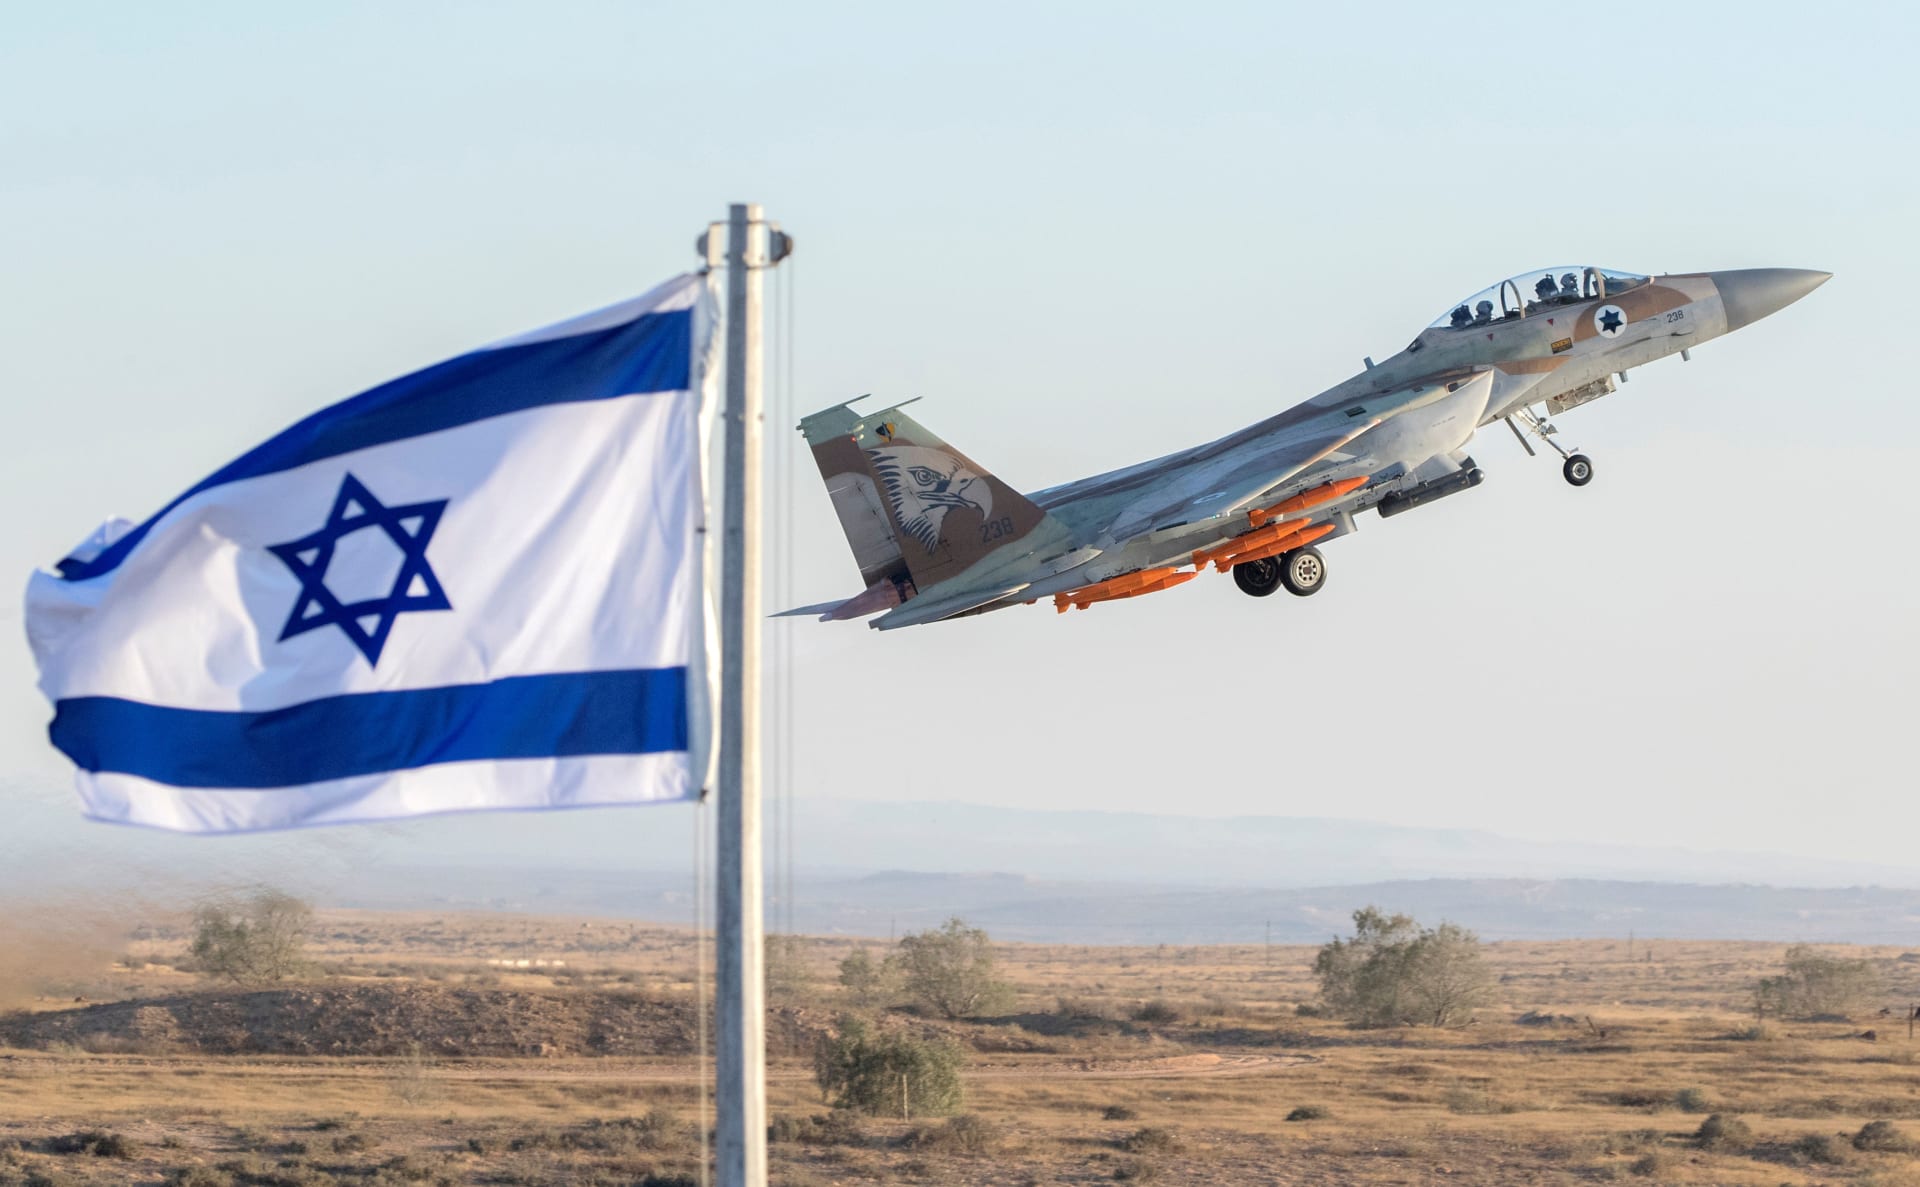 إسرائيل تقصف بطارية صواريخ سورية استهدفت طائراتها فوق لبنان